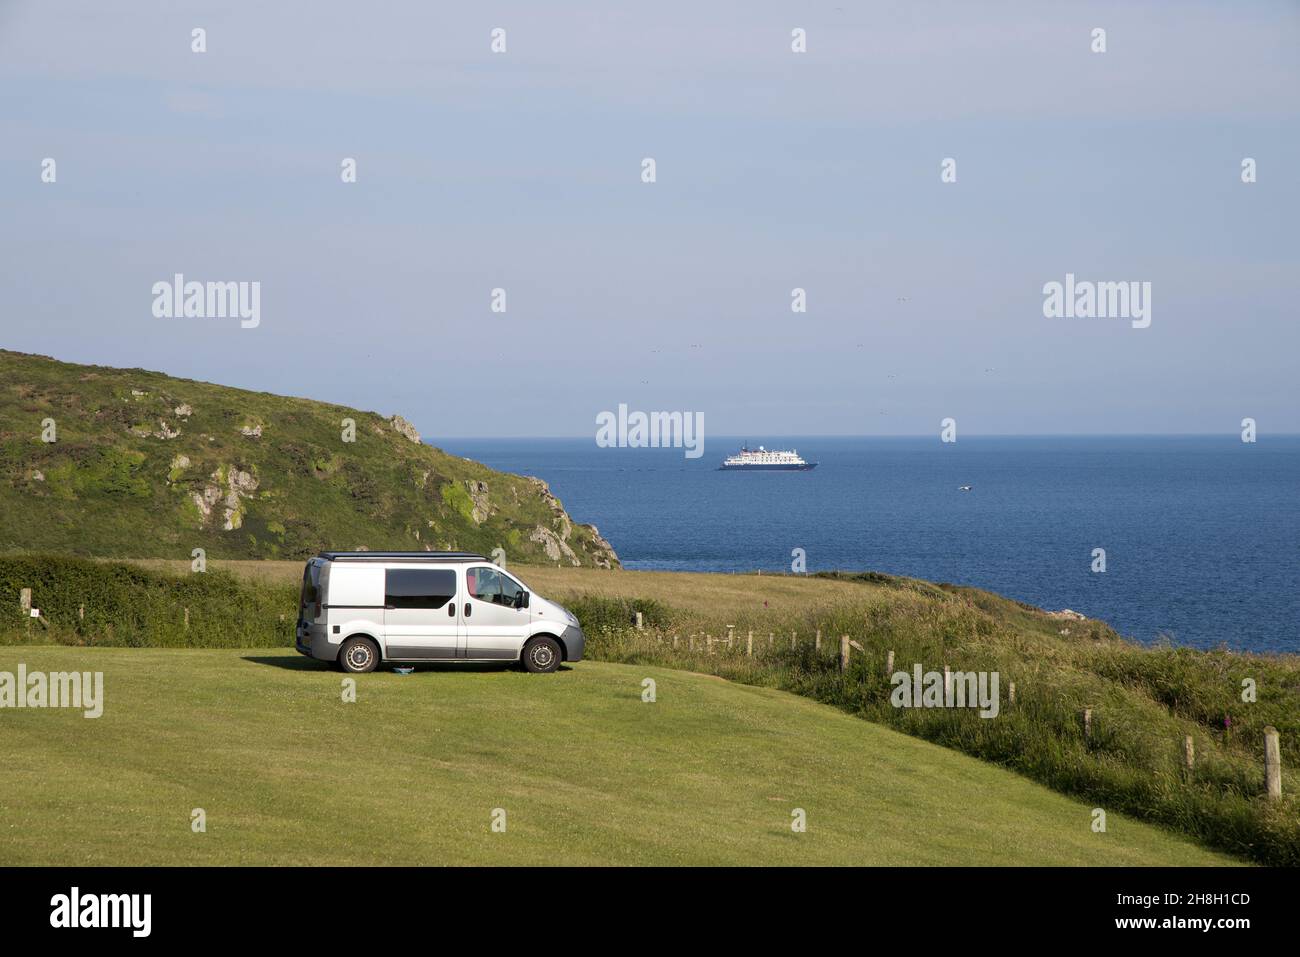 Campervan en champ avec ferry à distance, Marloes, West Wales, Royaume-Uni Banque D'Images